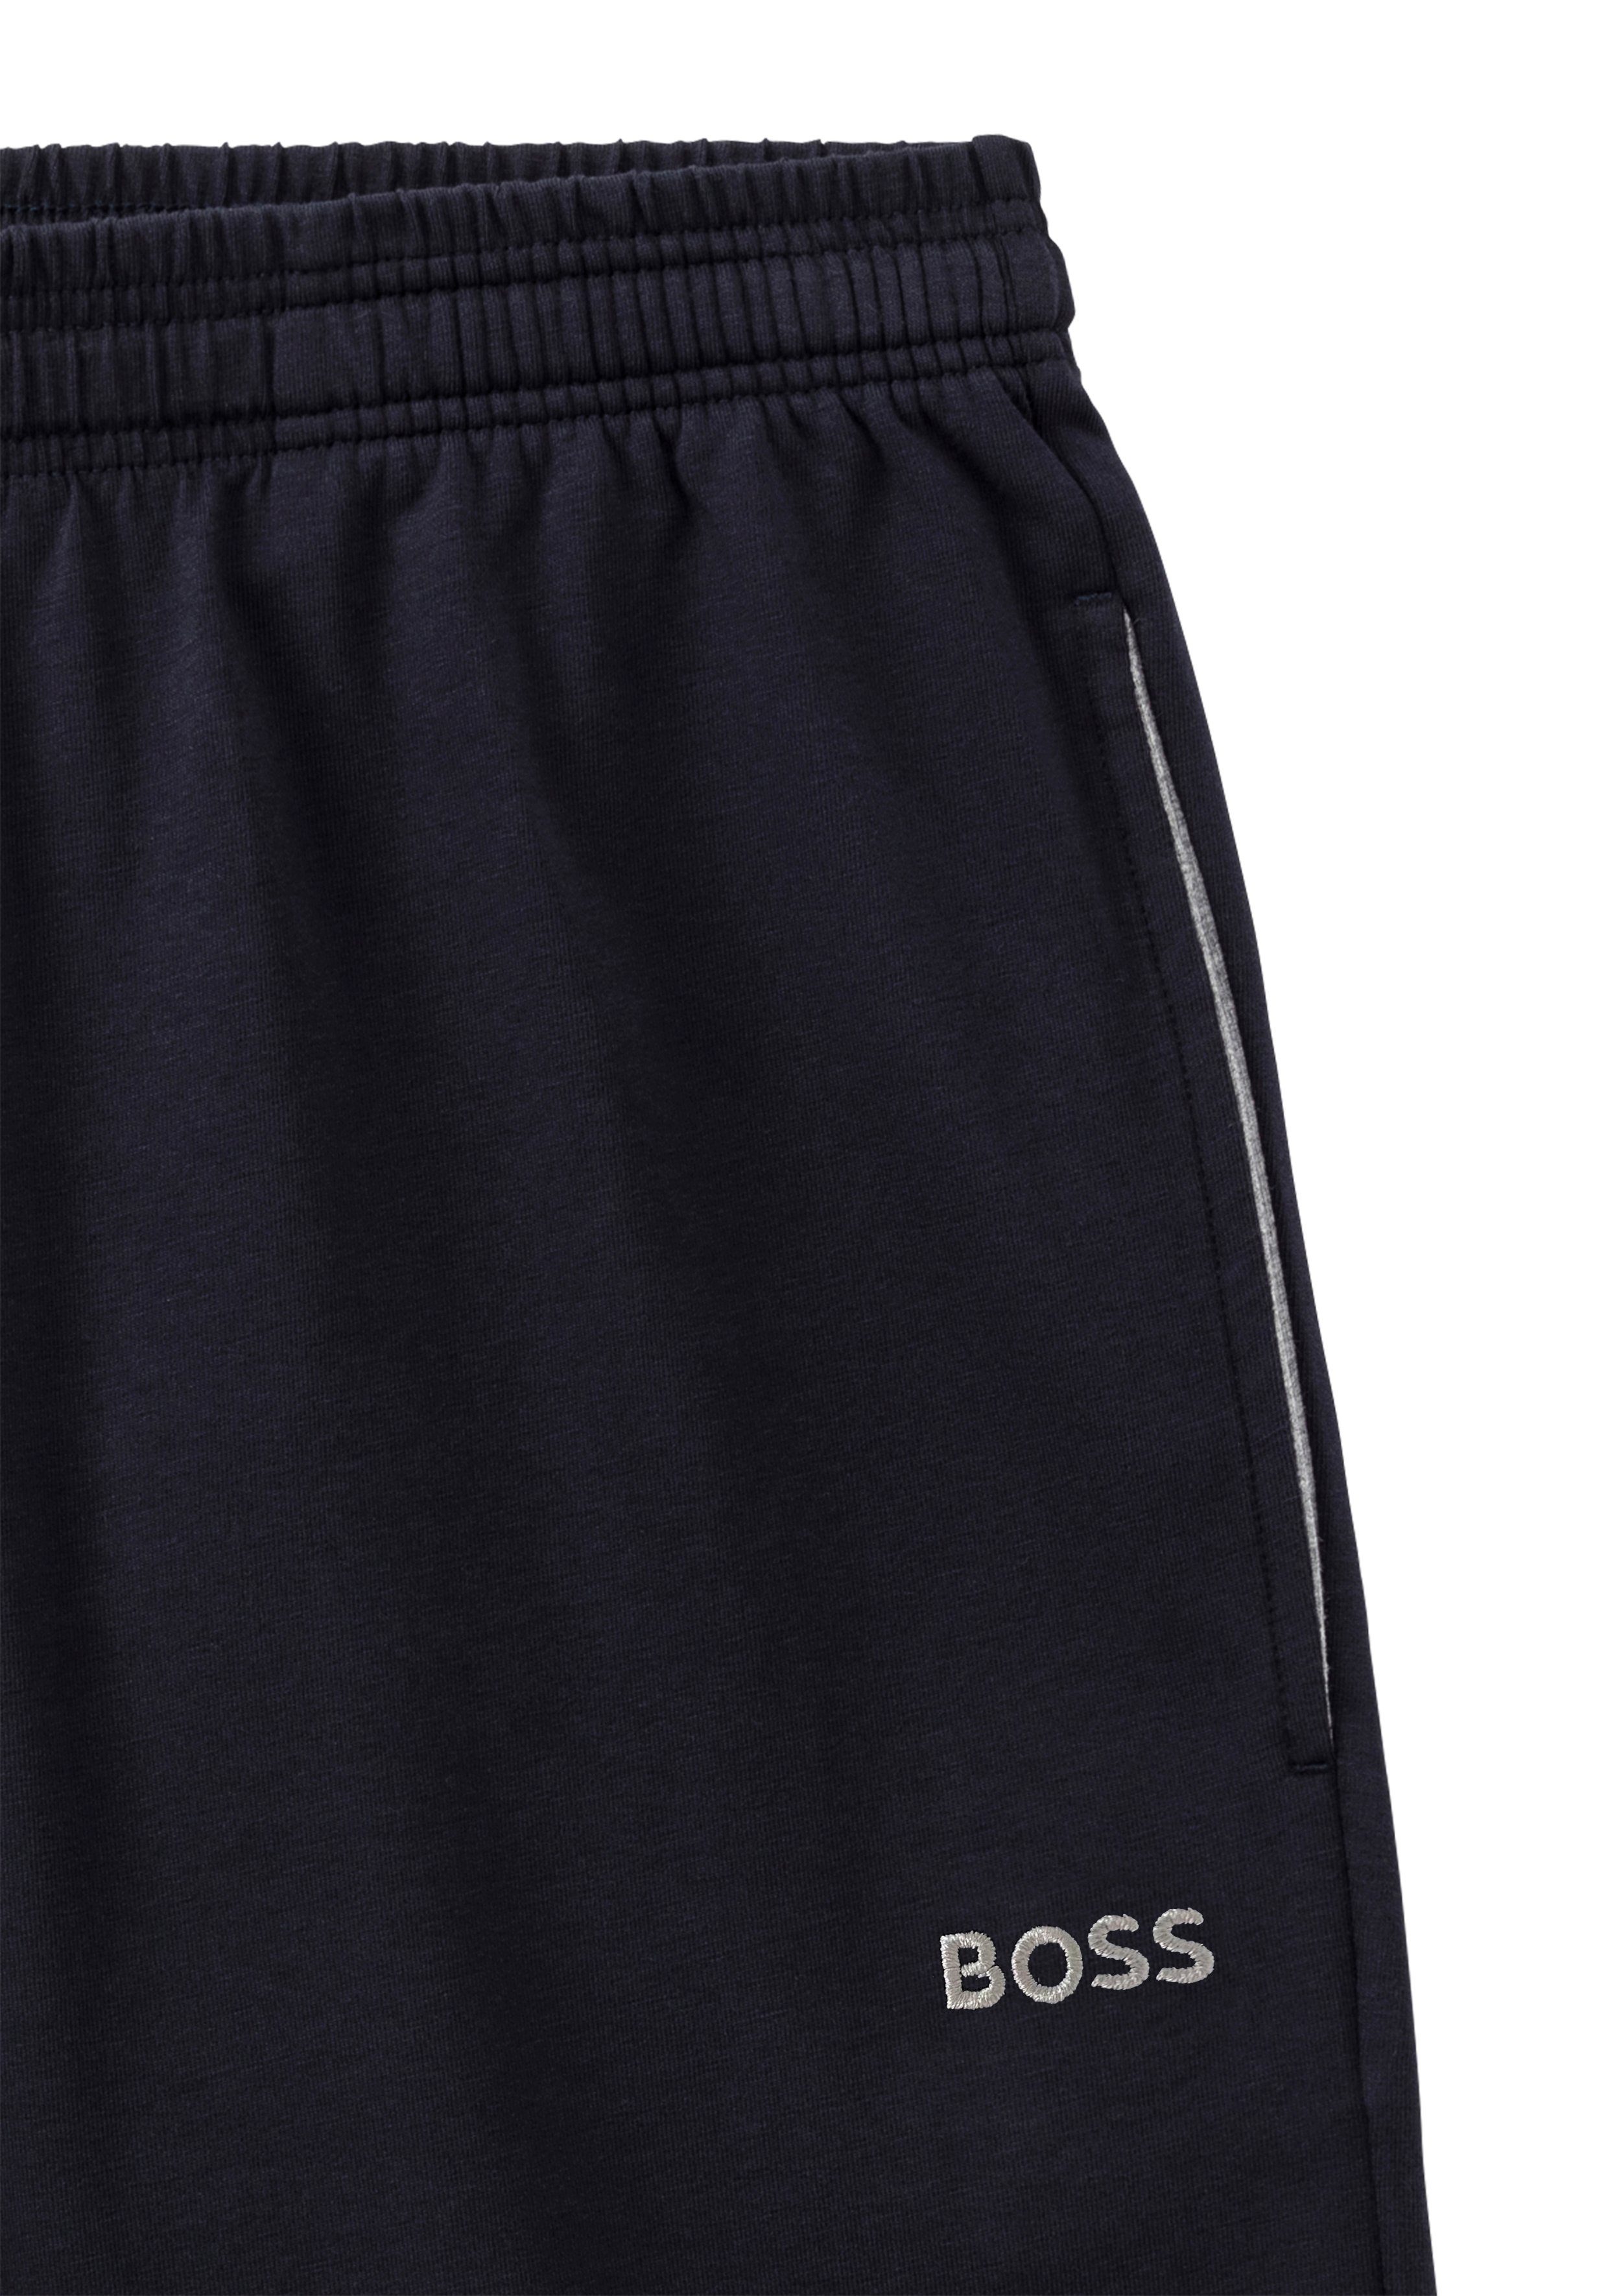 BOSS Shorts Mit navy dezenter Stickerei BOSS